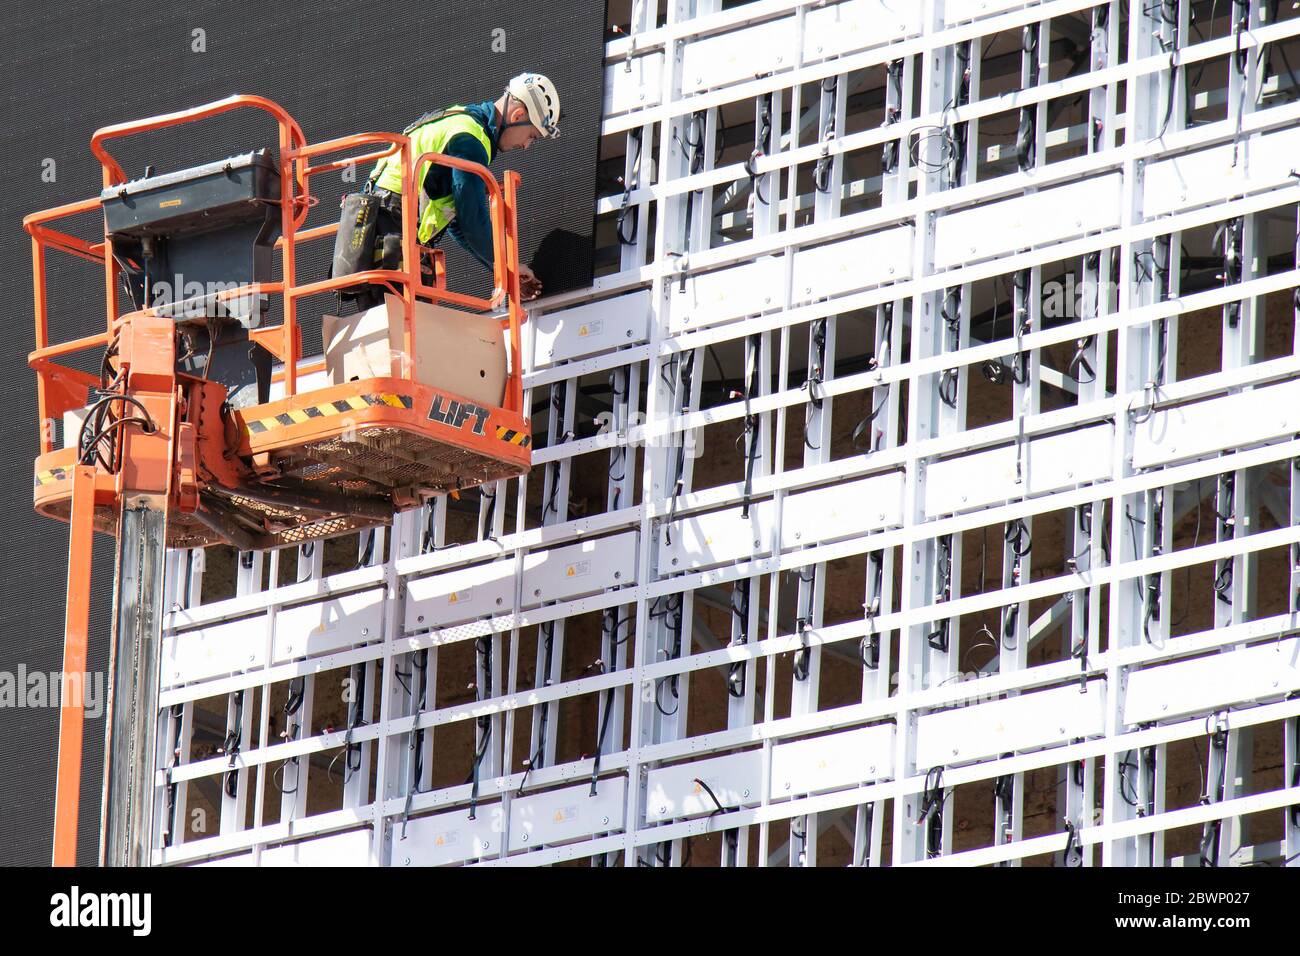 Belgrad, Serbien - 6. Mai 2020: Bauarbeiter im Krankorb installiert Bleche zur Verkleidung der Metallkonstruktion an einer Gebäudefassadenwand Stockfoto